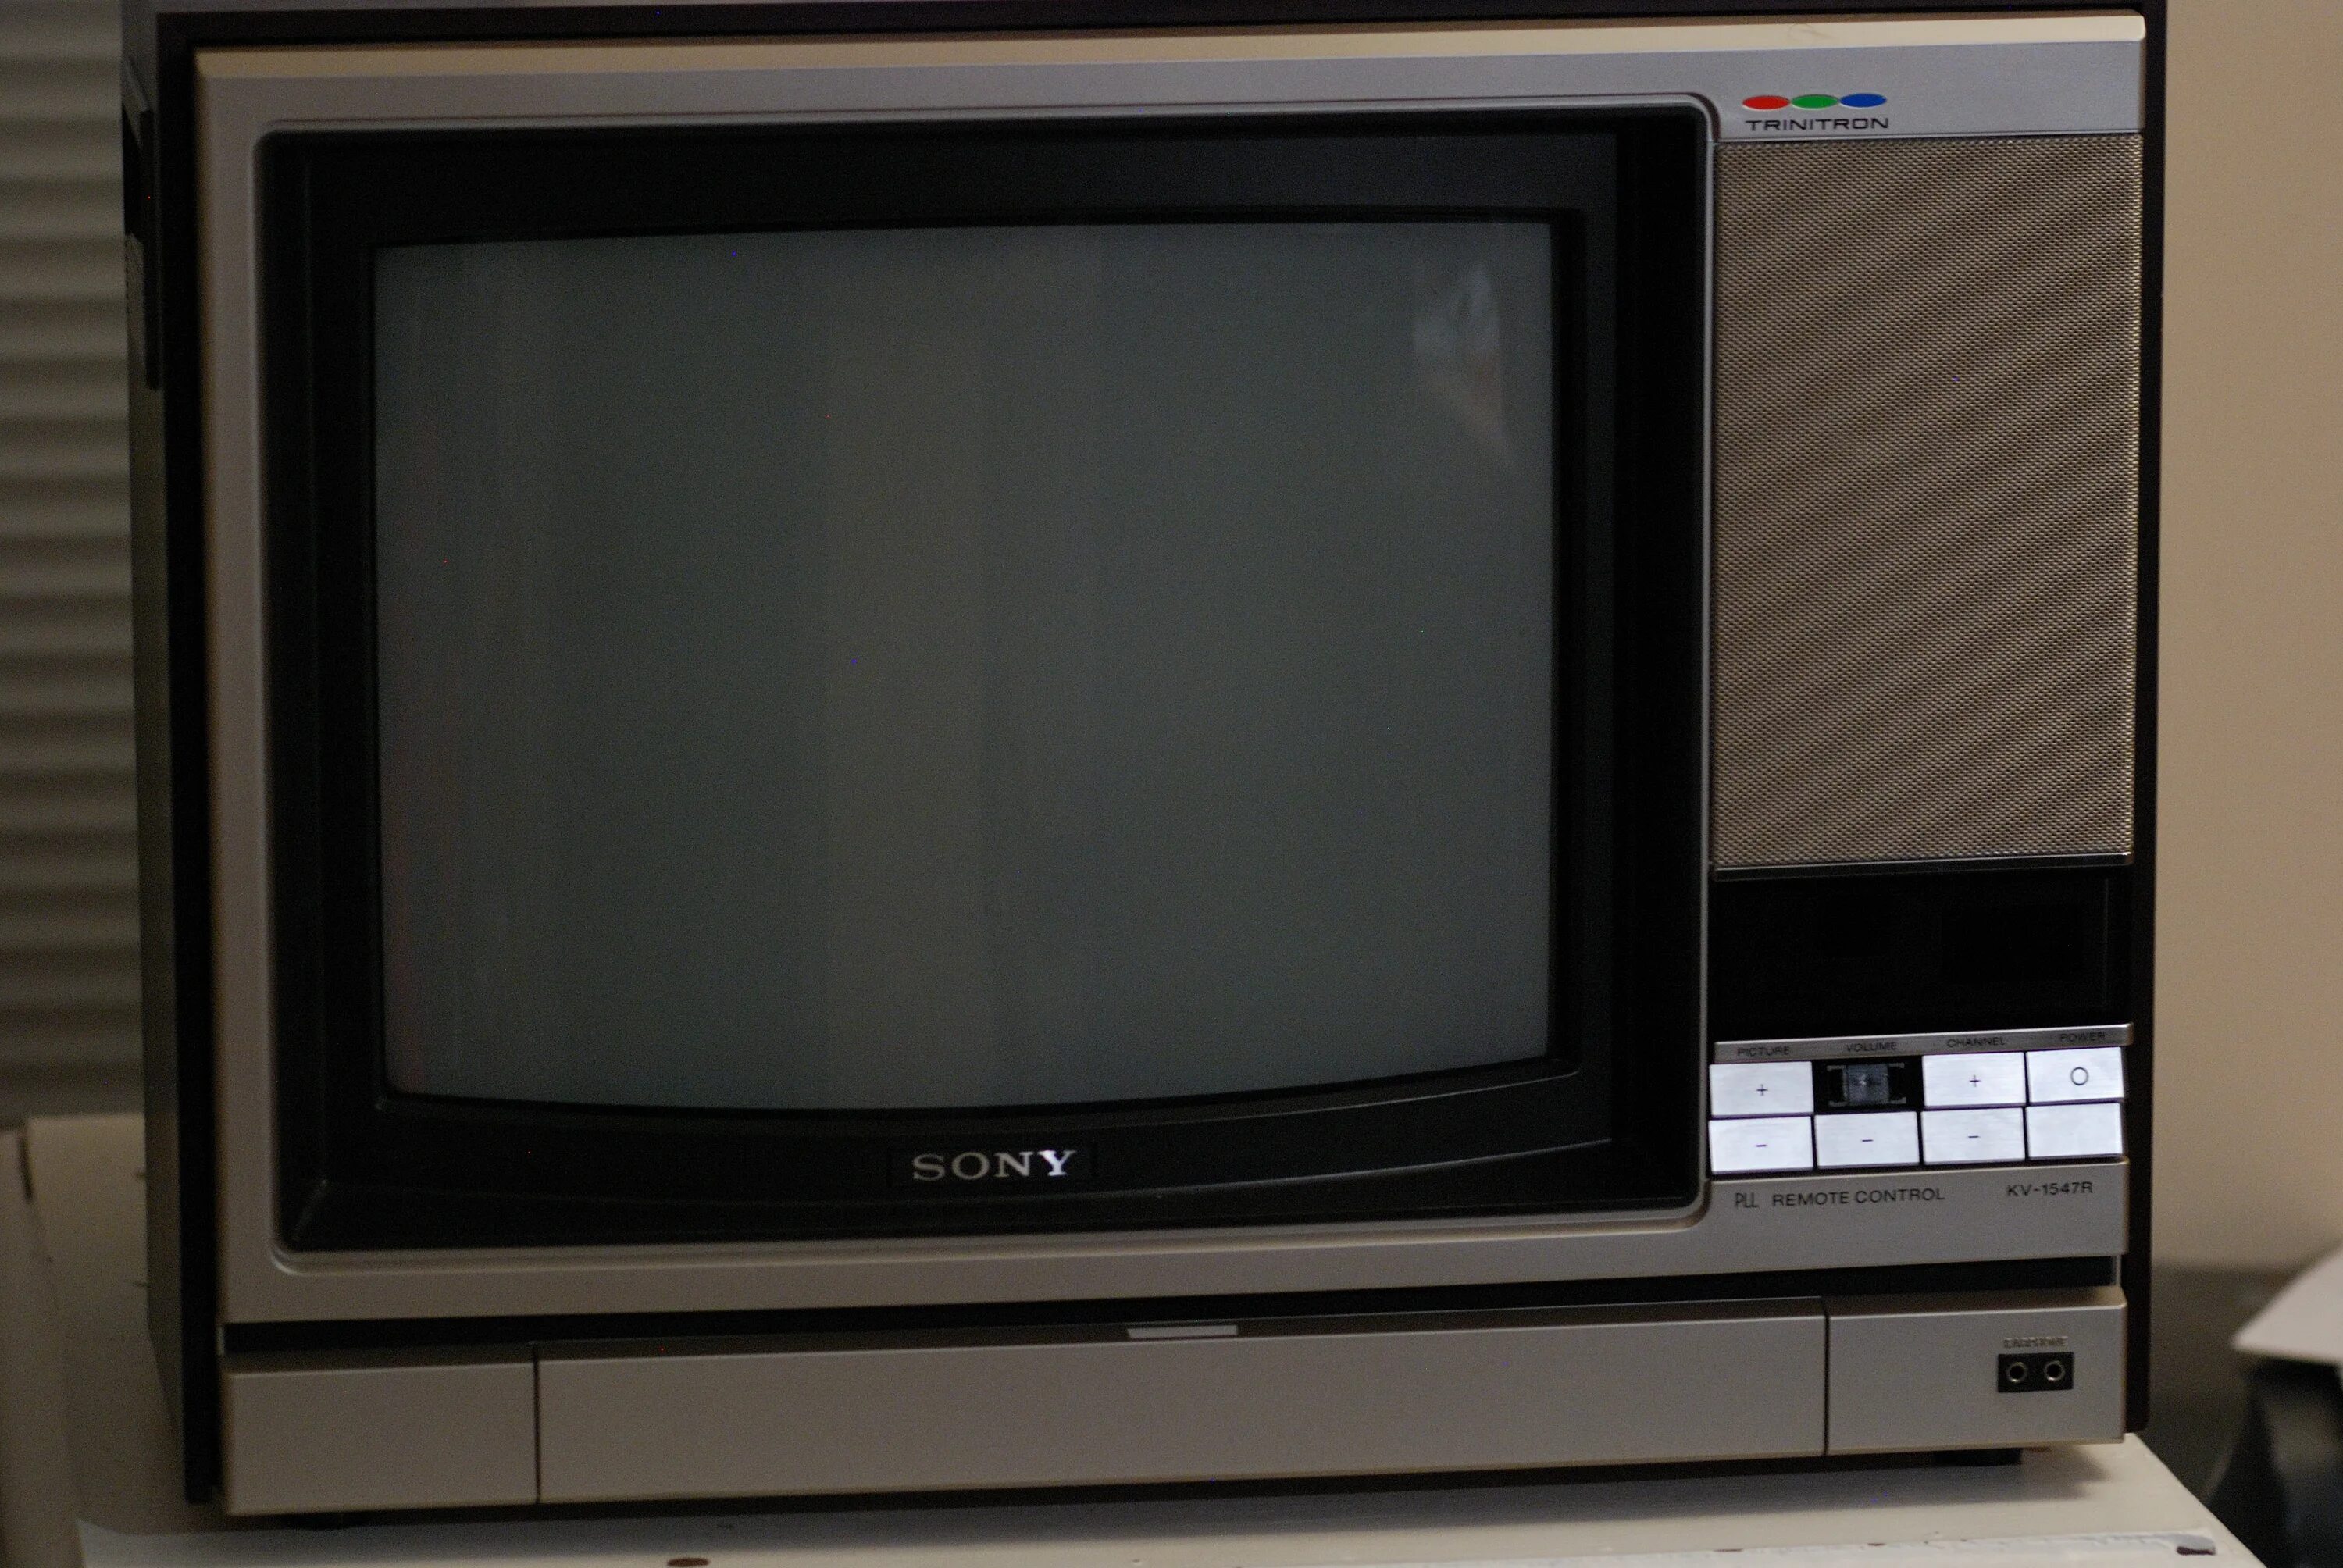 Sony Trinitron TV 1985. Телевизор Sony Trinitron 1970. 1982 Sony Trinitron TV. Телевизоры сони тринитрон 70х 80х.